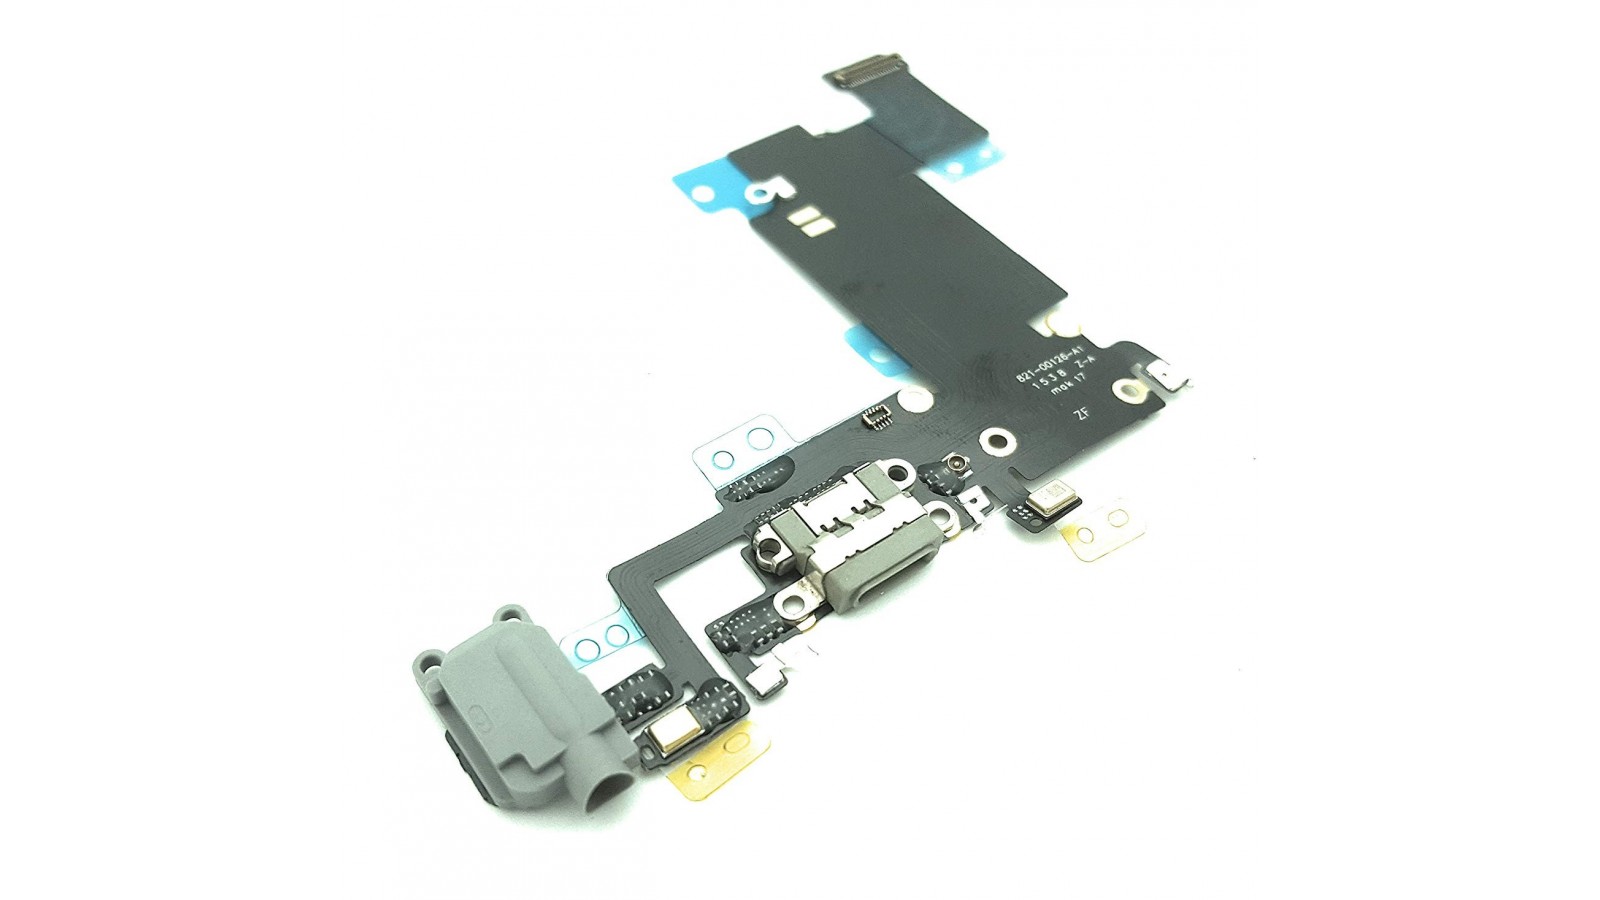 Flat connettore ricarica Apple iPhone 6S Plus completo di microfono antenna jack audio nero